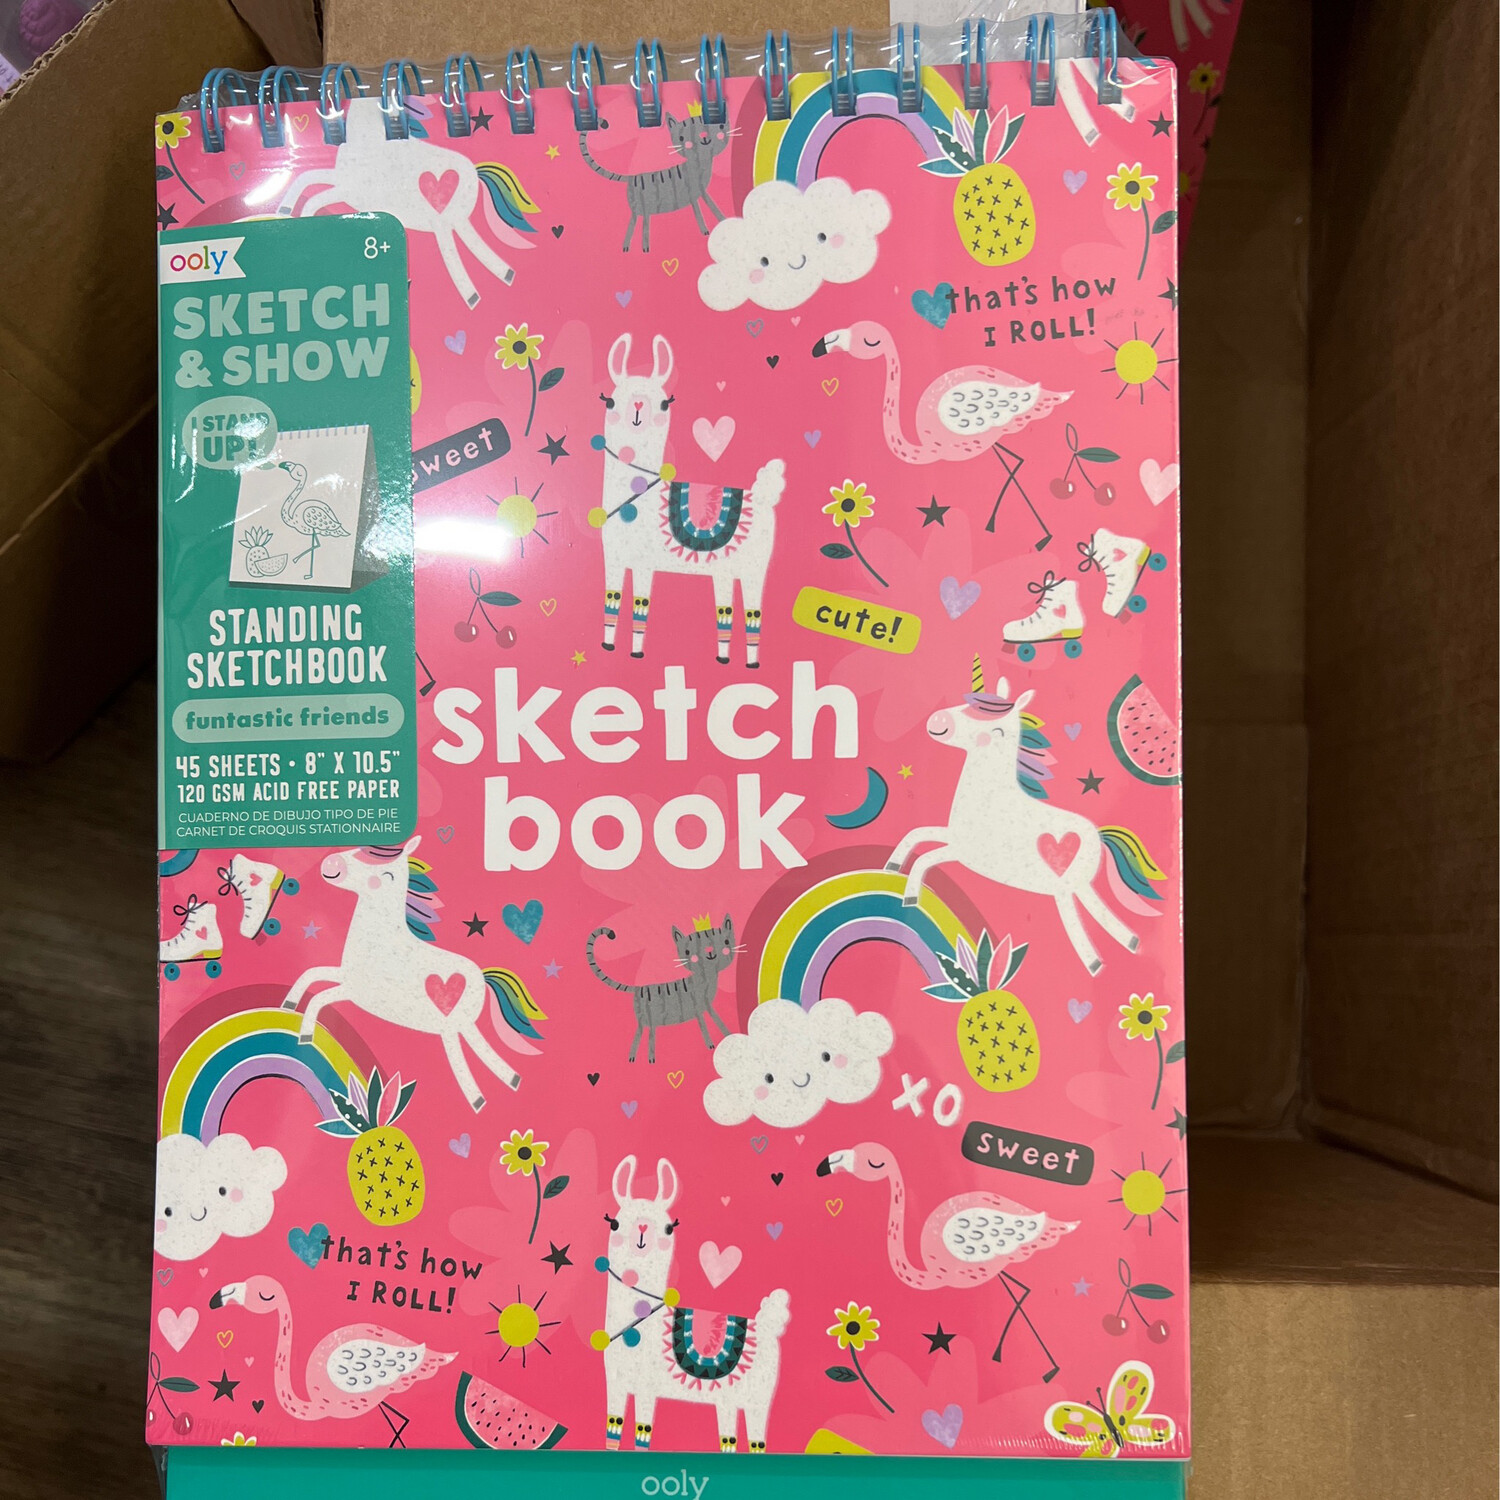 Standing Sketchbook - Pink